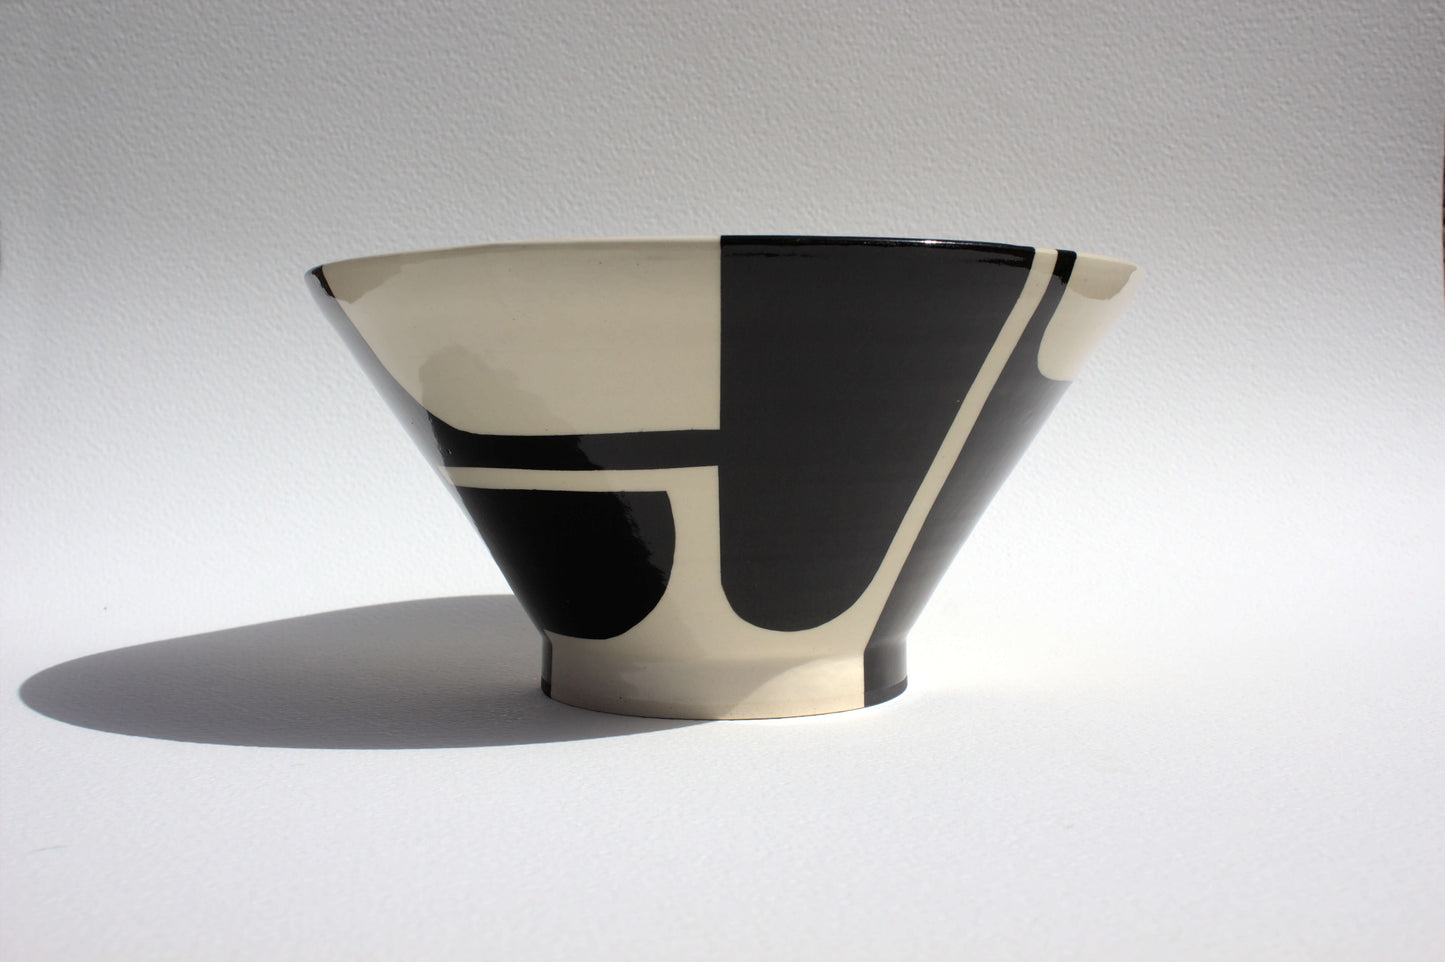 Black Design Bowl - Large